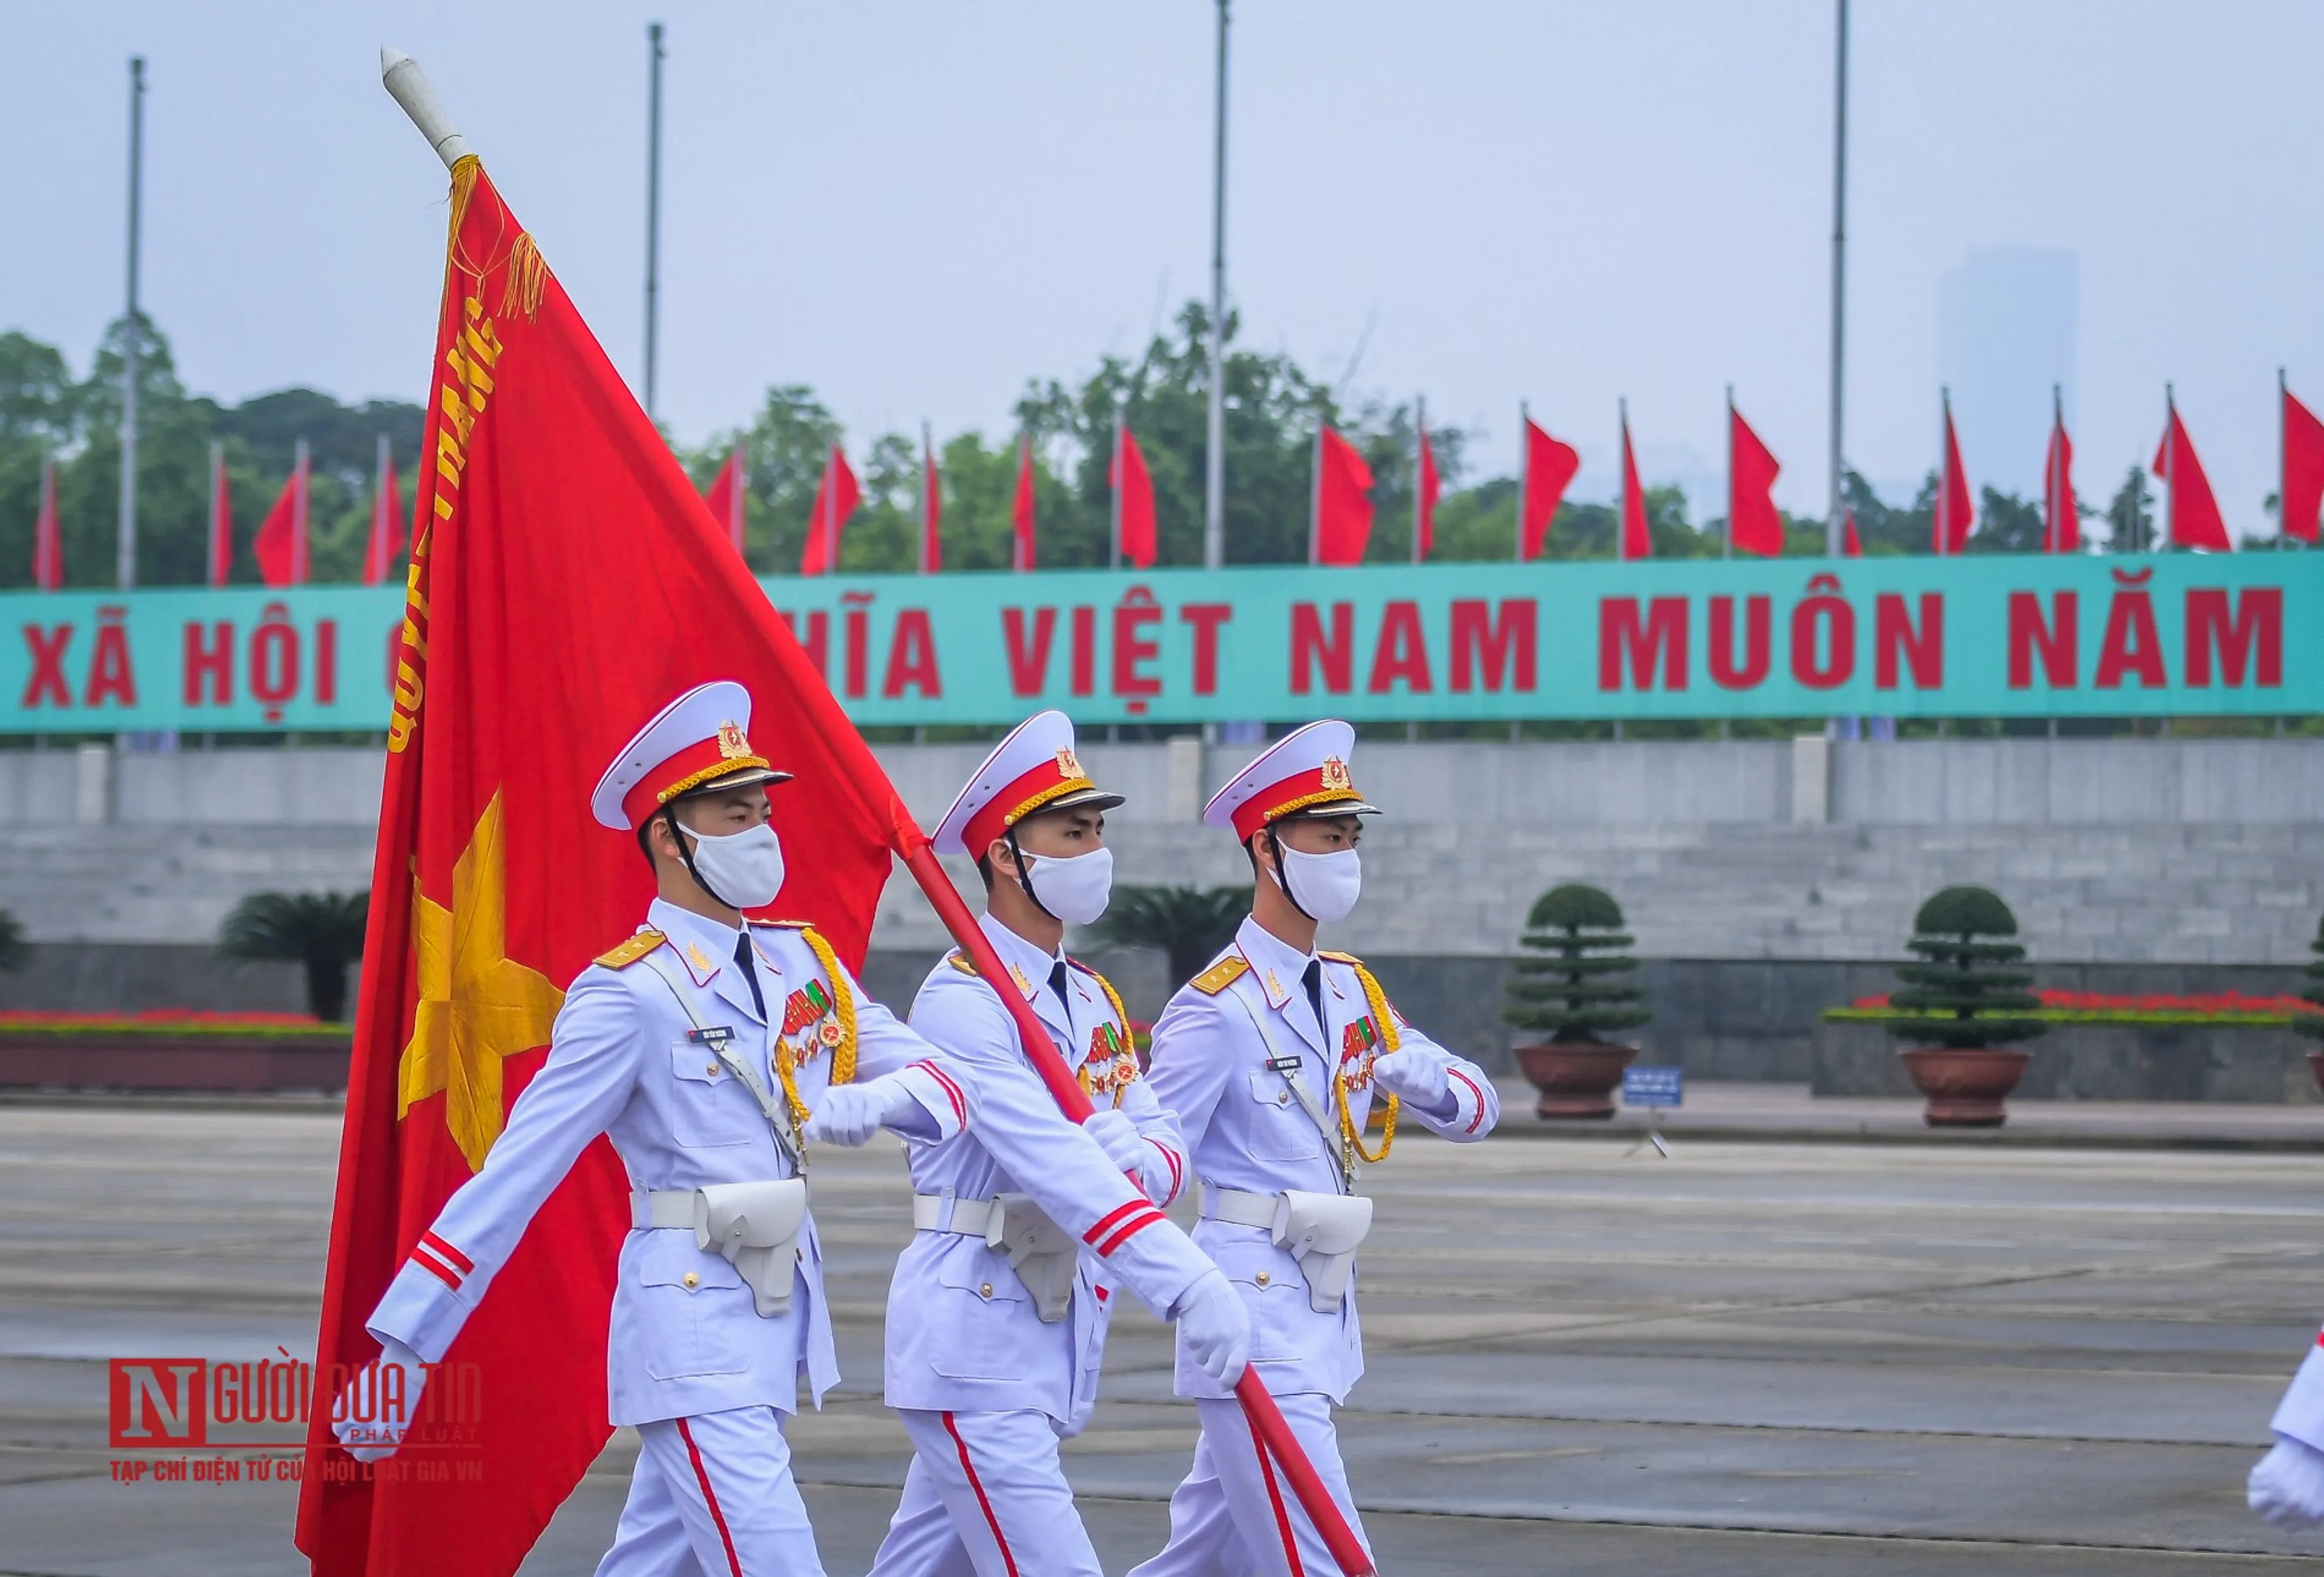 Kinh nghiệm vui chơi công viên nước Hồ Tây và tham quan Lăng Chủ tịch Hồ Chí Minh